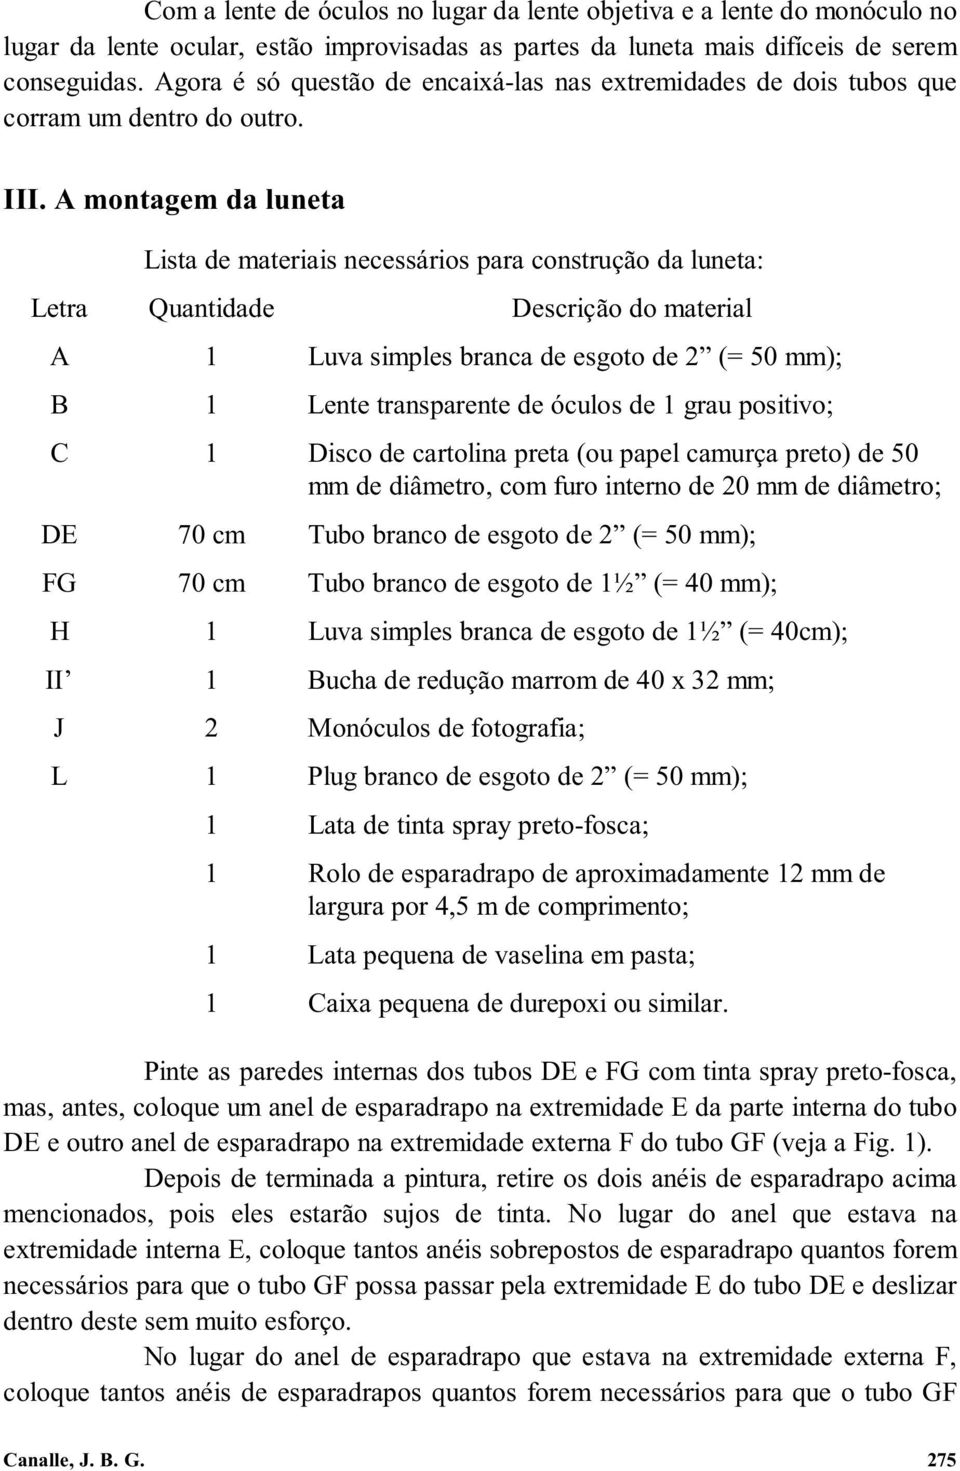 A montagem da luneta Lista de materiais necessários para construção da luneta: Letra Quantidade Descrição do material A 1 Luva simples branca de esgoto de 2 (= 50 mm); B 1